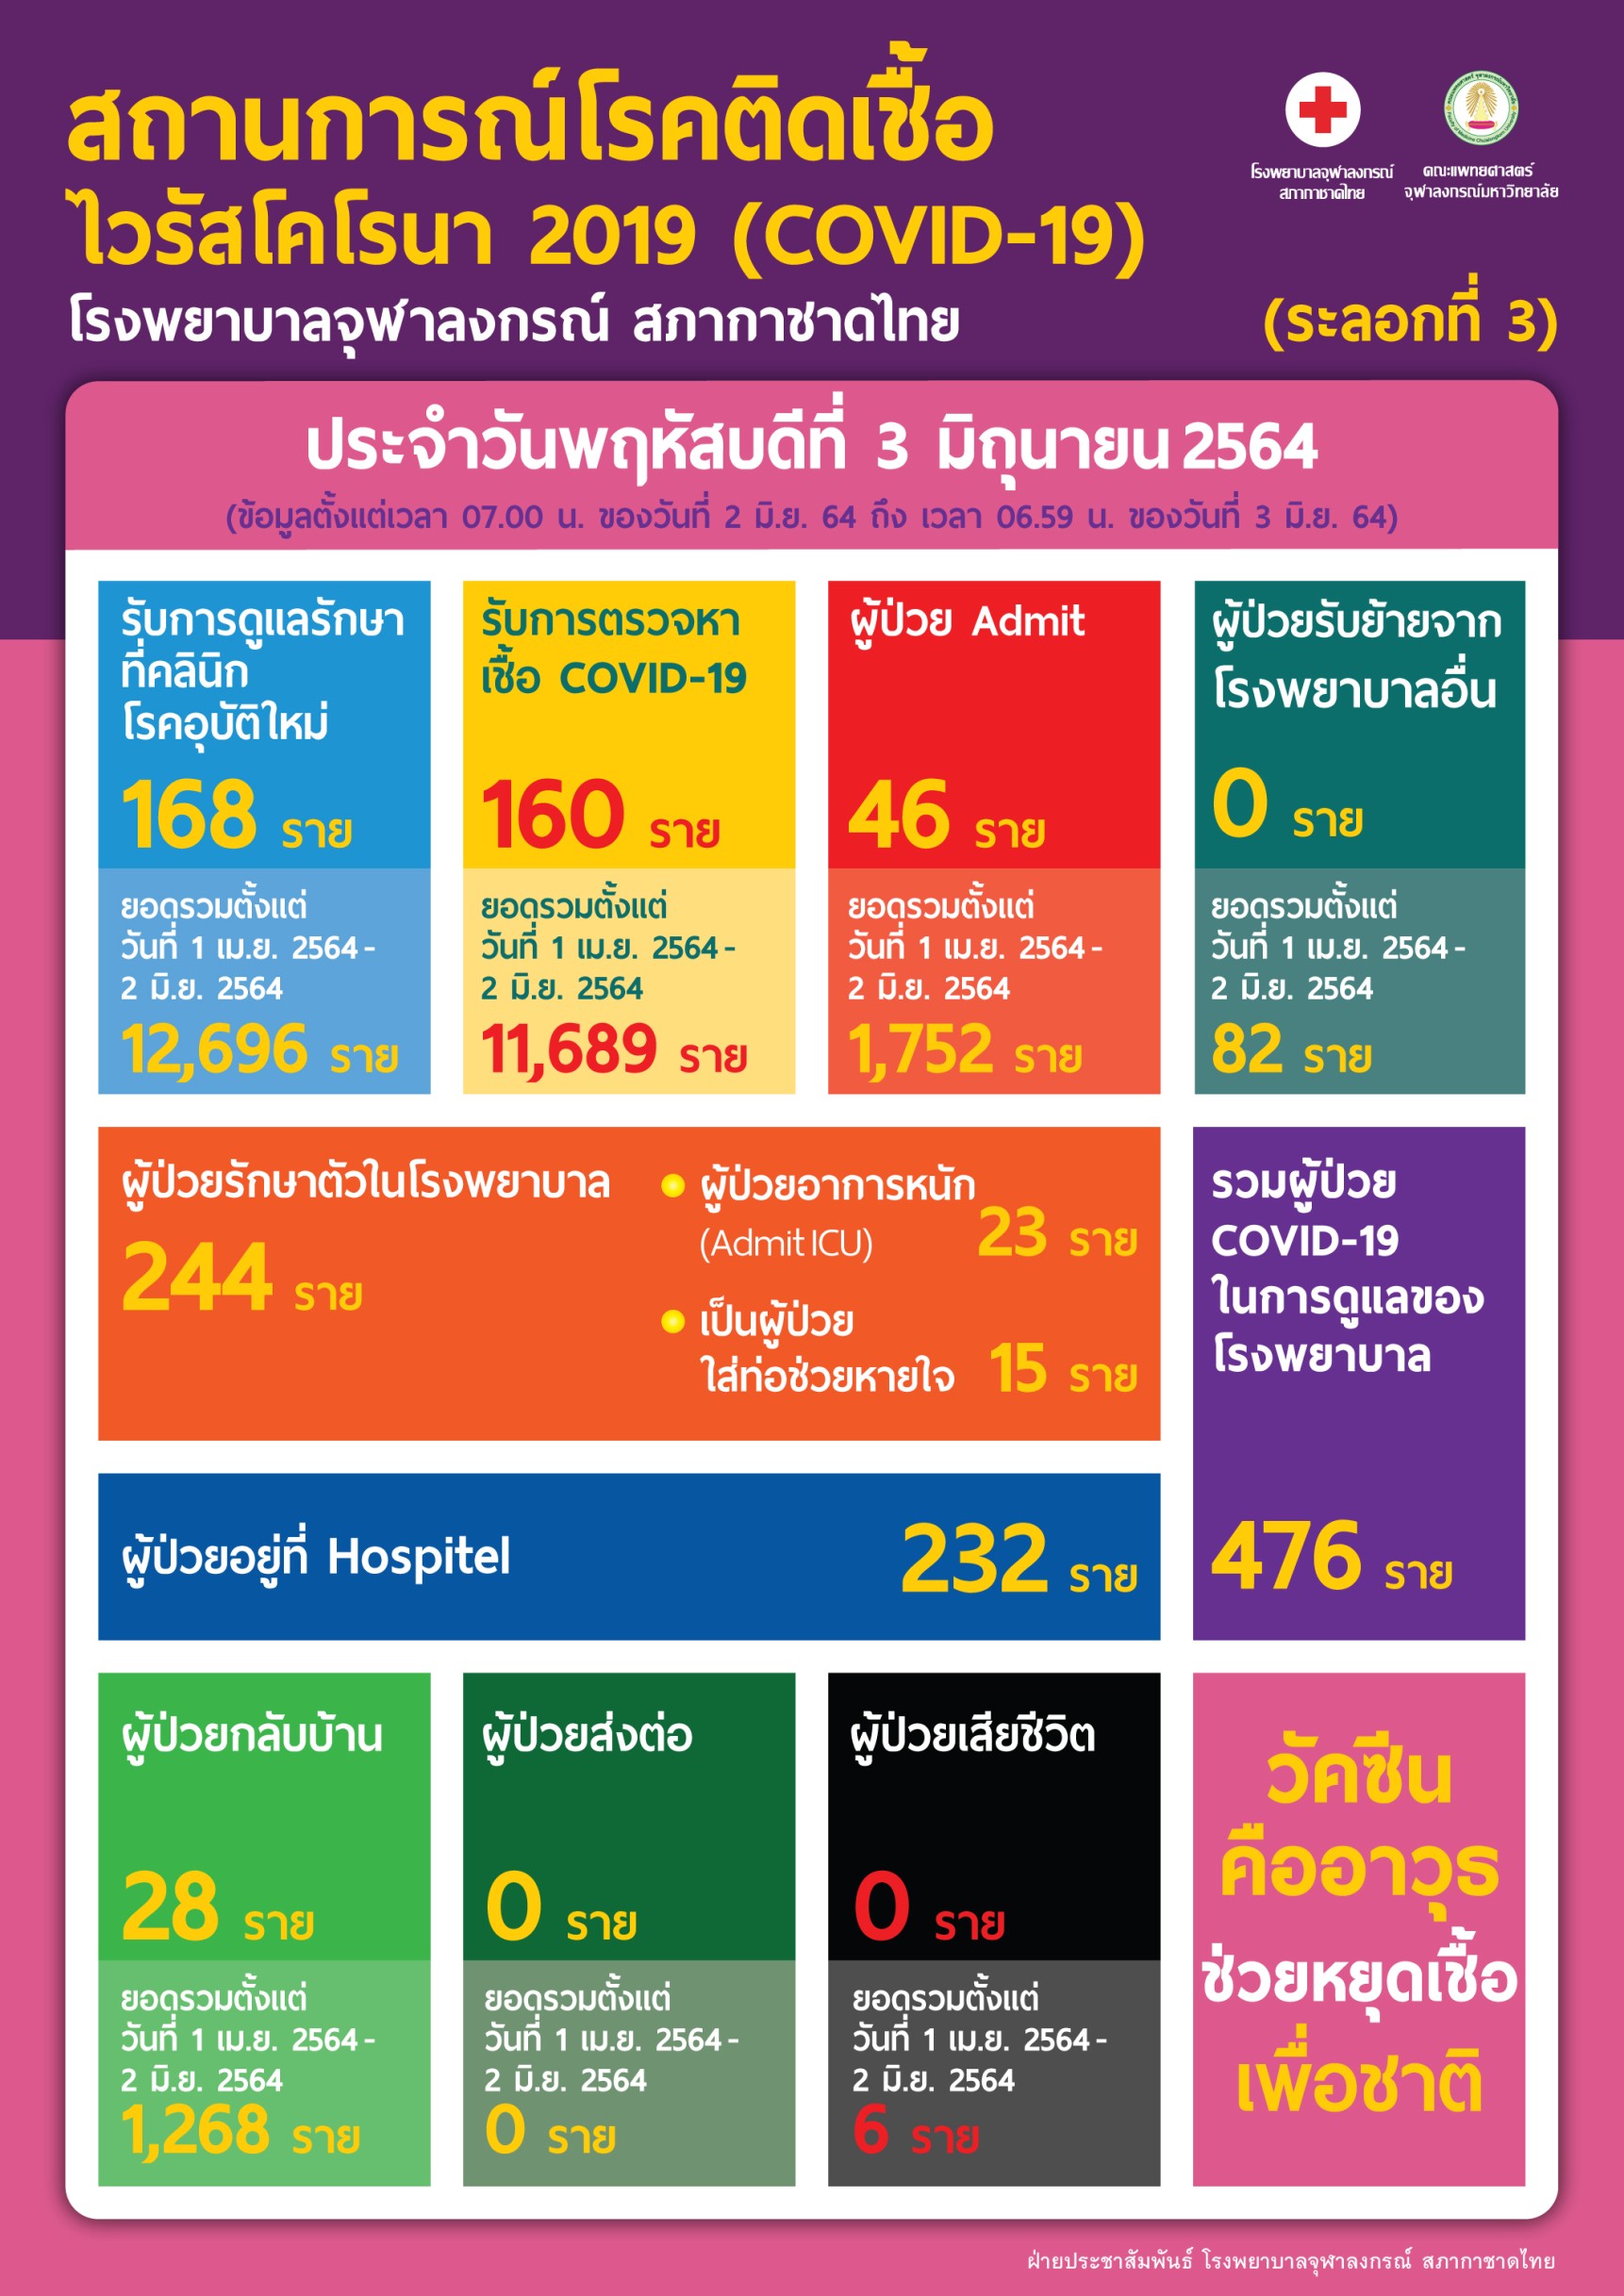 สถานการณ์โรคติดเชื้อ ไวรัสโคโรนา 2019 (COVID-19) (ระลอกที่ 3) โรงพยาบาลจุฬาลงกรณ์ สภากาชาดไทย ประจำวันพฤหัสบดีที่ 3 มิถุนายน 2564